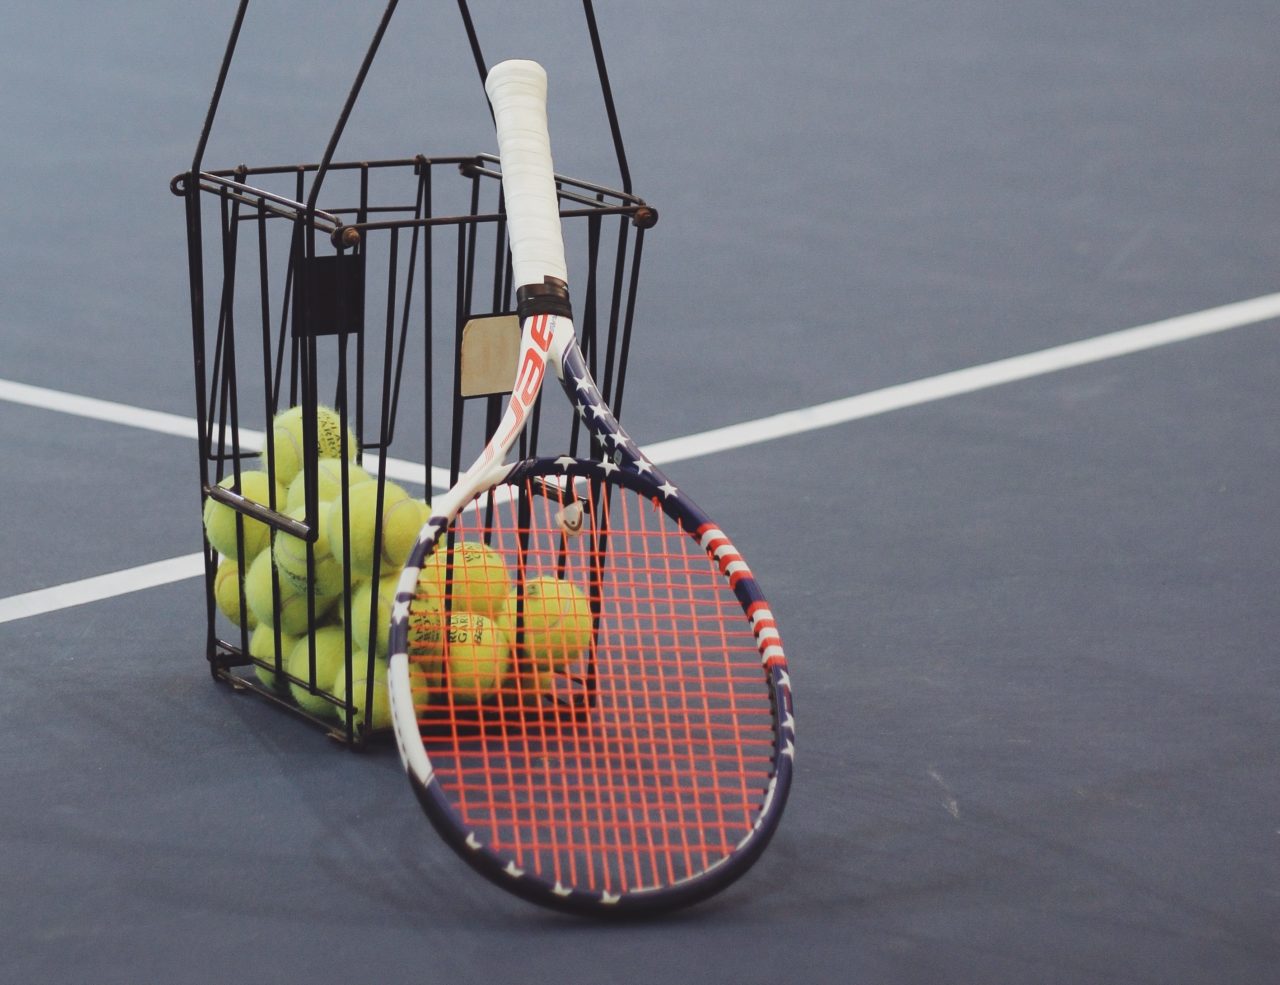 tennis-ttk-morgondrivar-1280x985-1.jpg